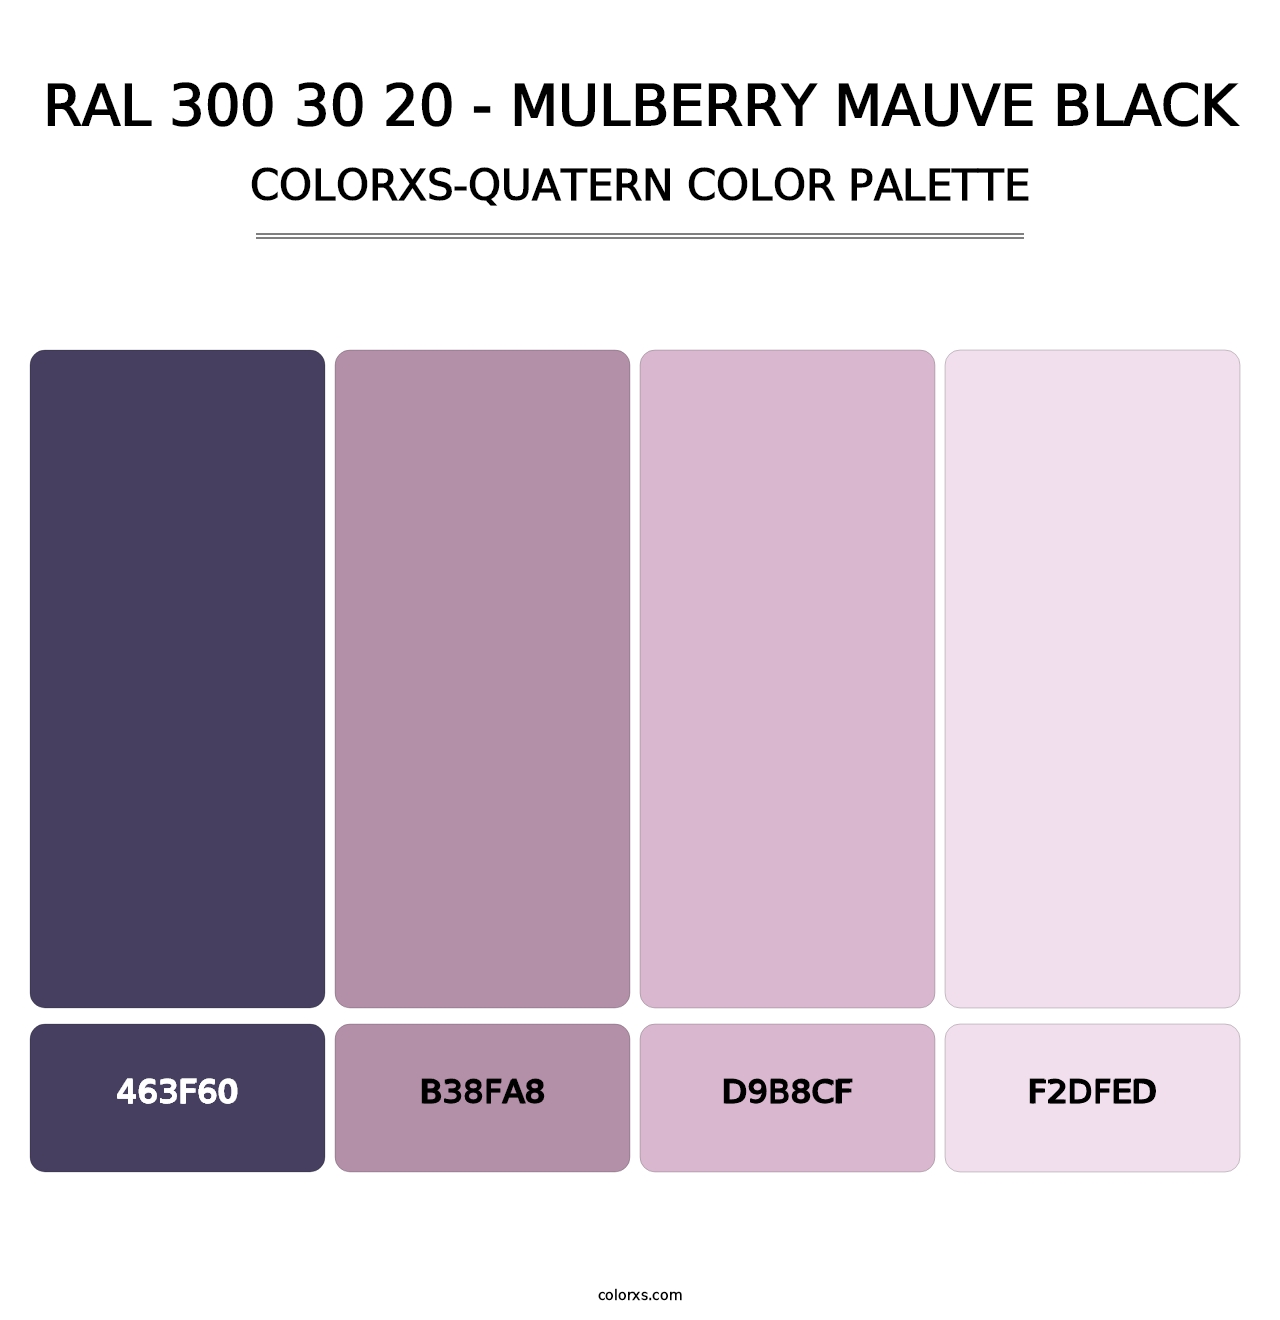 RAL 300 30 20 - Mulberry Mauve Black - Colorxs Quatern Palette